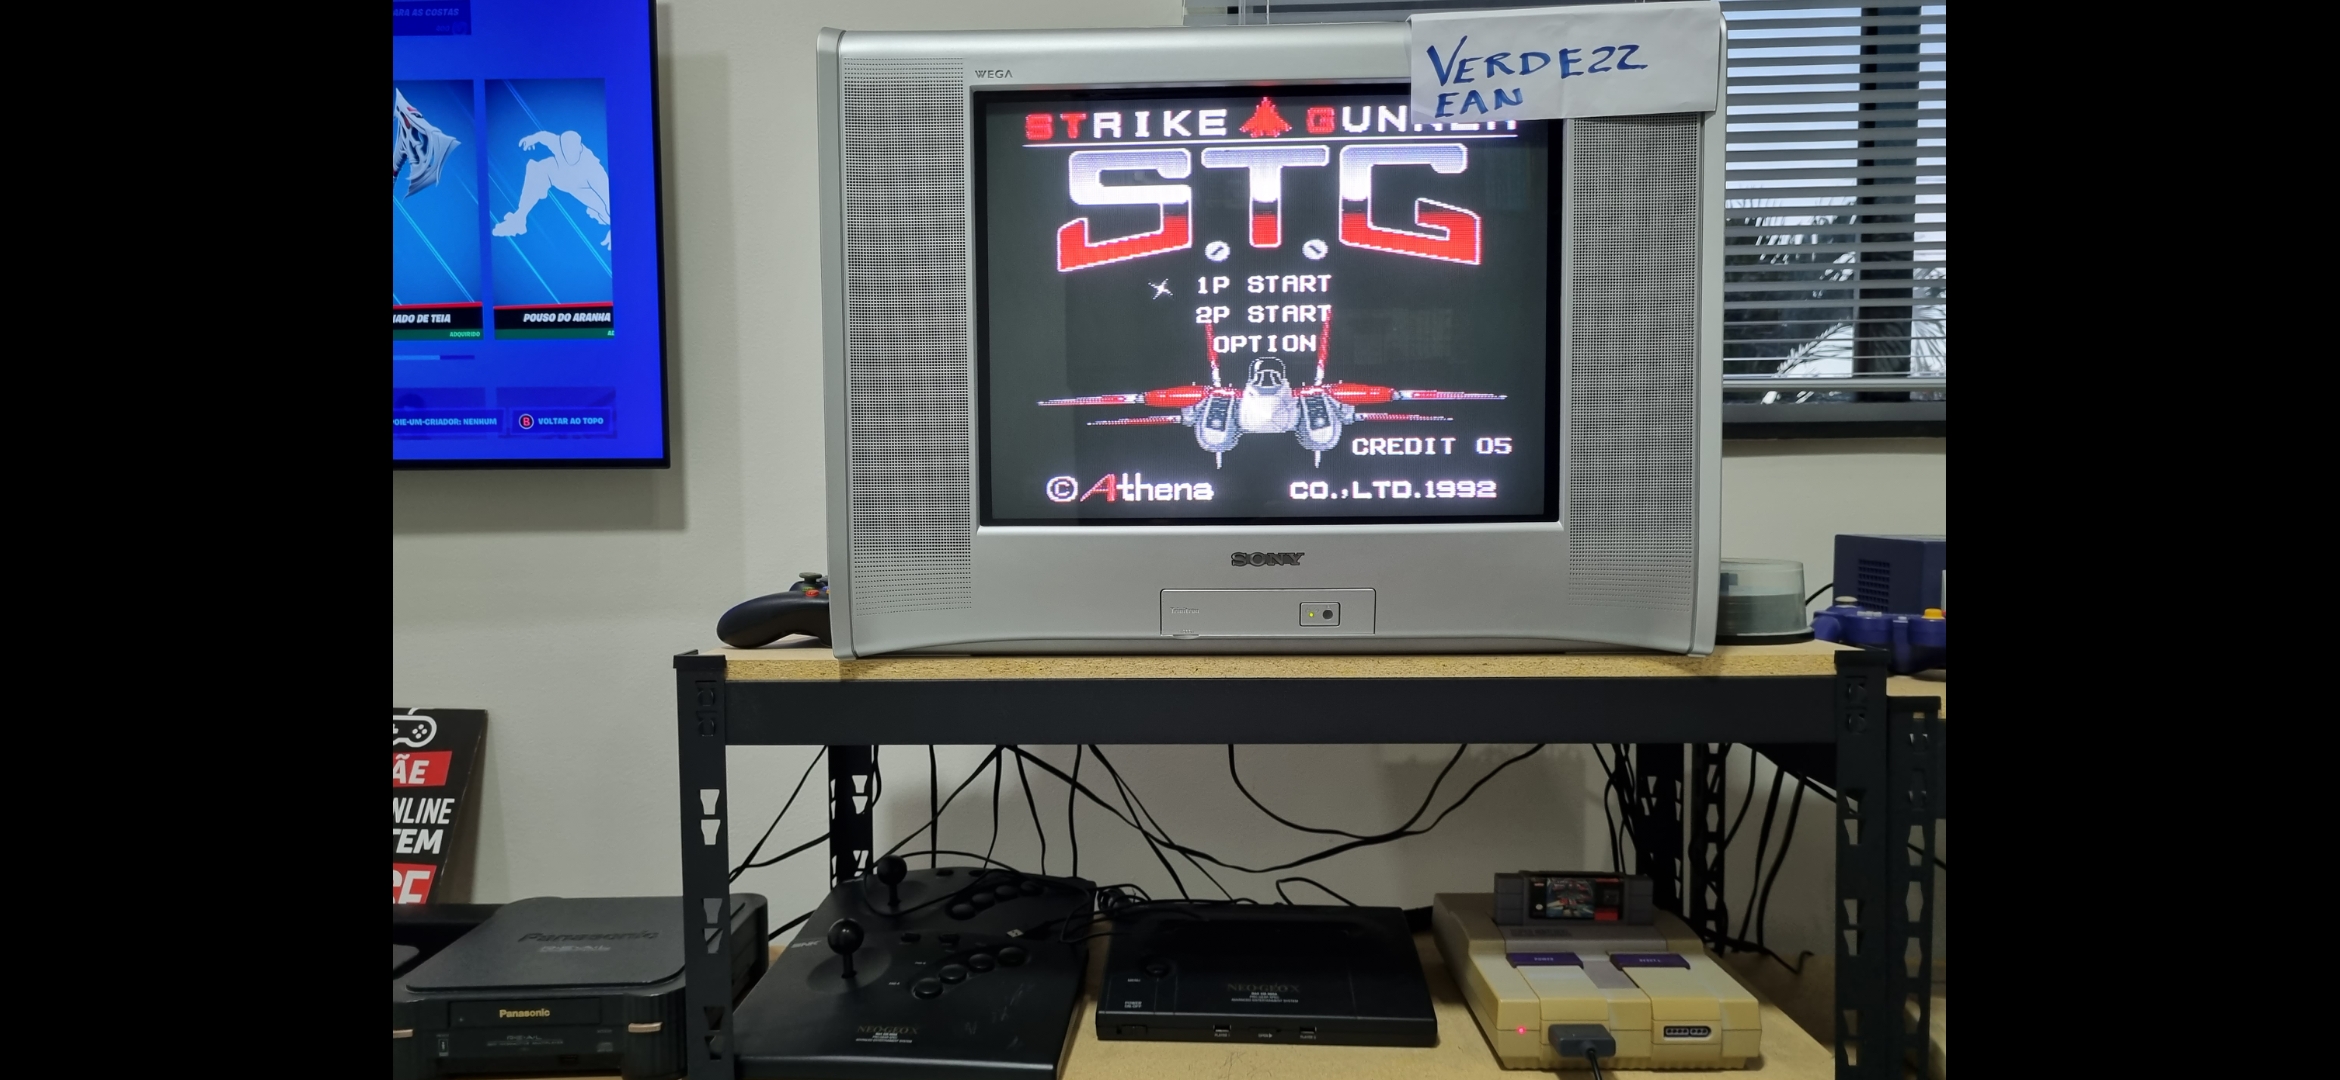 Verde22: Strike Gunner S.T.G. (SNES/Super Famicom) 518,600 points on 2022-06-18 14:06:38